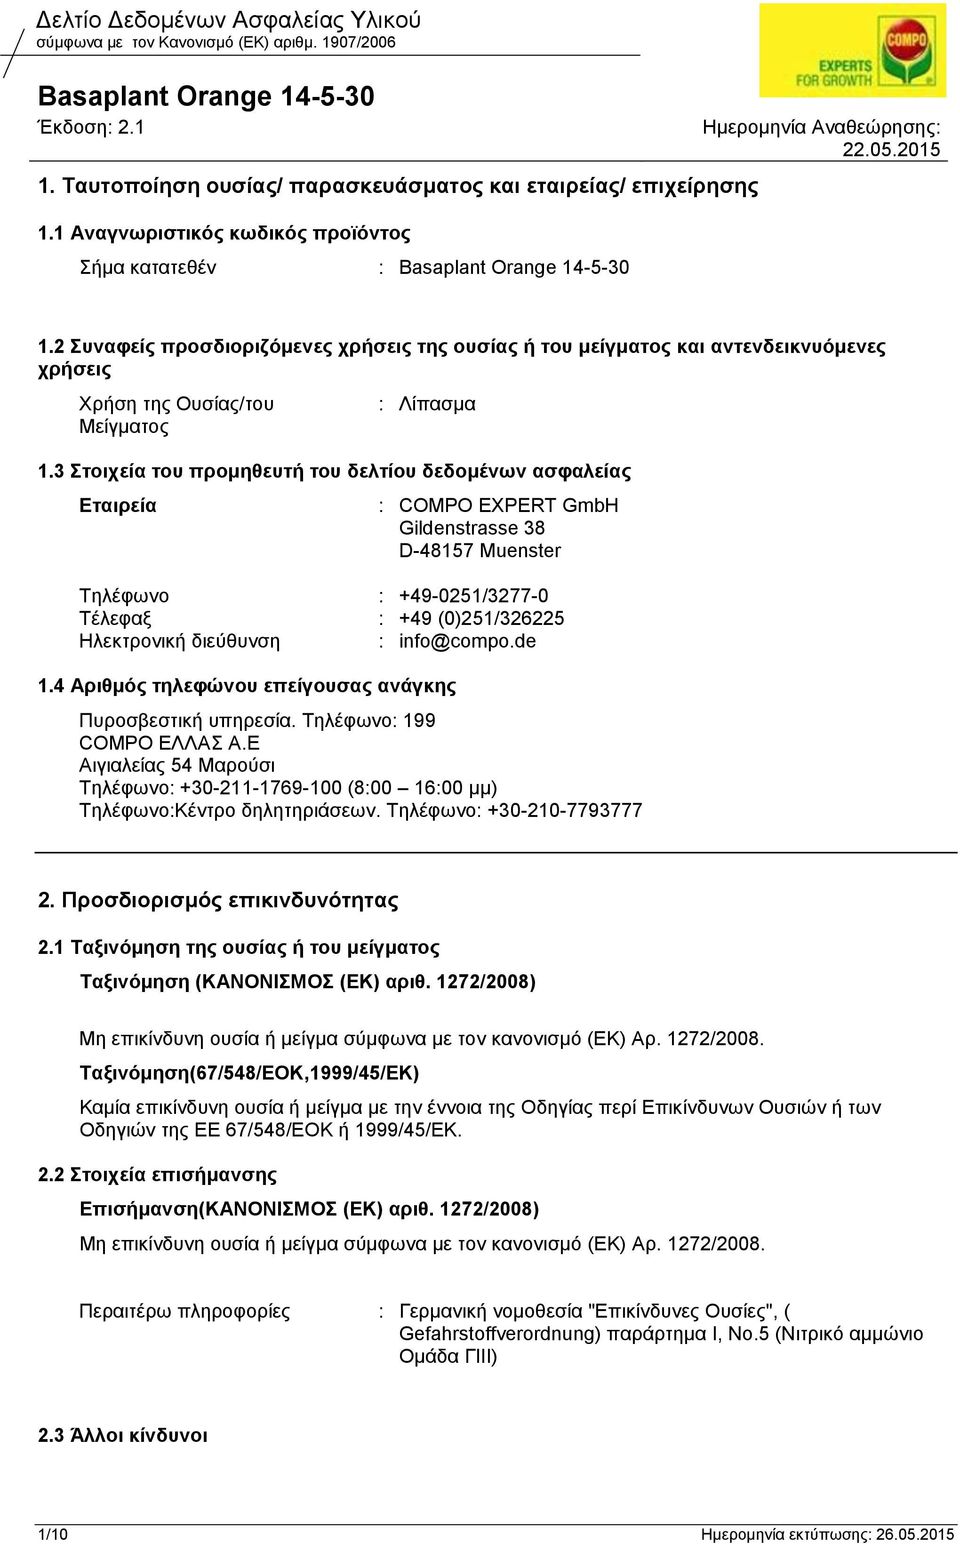 3 Στοιχεία του προμηθευτή του δελτίου δεδομένων ασφαλείας Εταιρεία : COMPO EXPERT GmbH Gildenstrasse 38 D-48157 Muenster Τηλέφωνο : +49-0251/3277-0 Τέλεφαξ : +49 (0)251/326225 Ηλεκτρονική διεύθυνση :